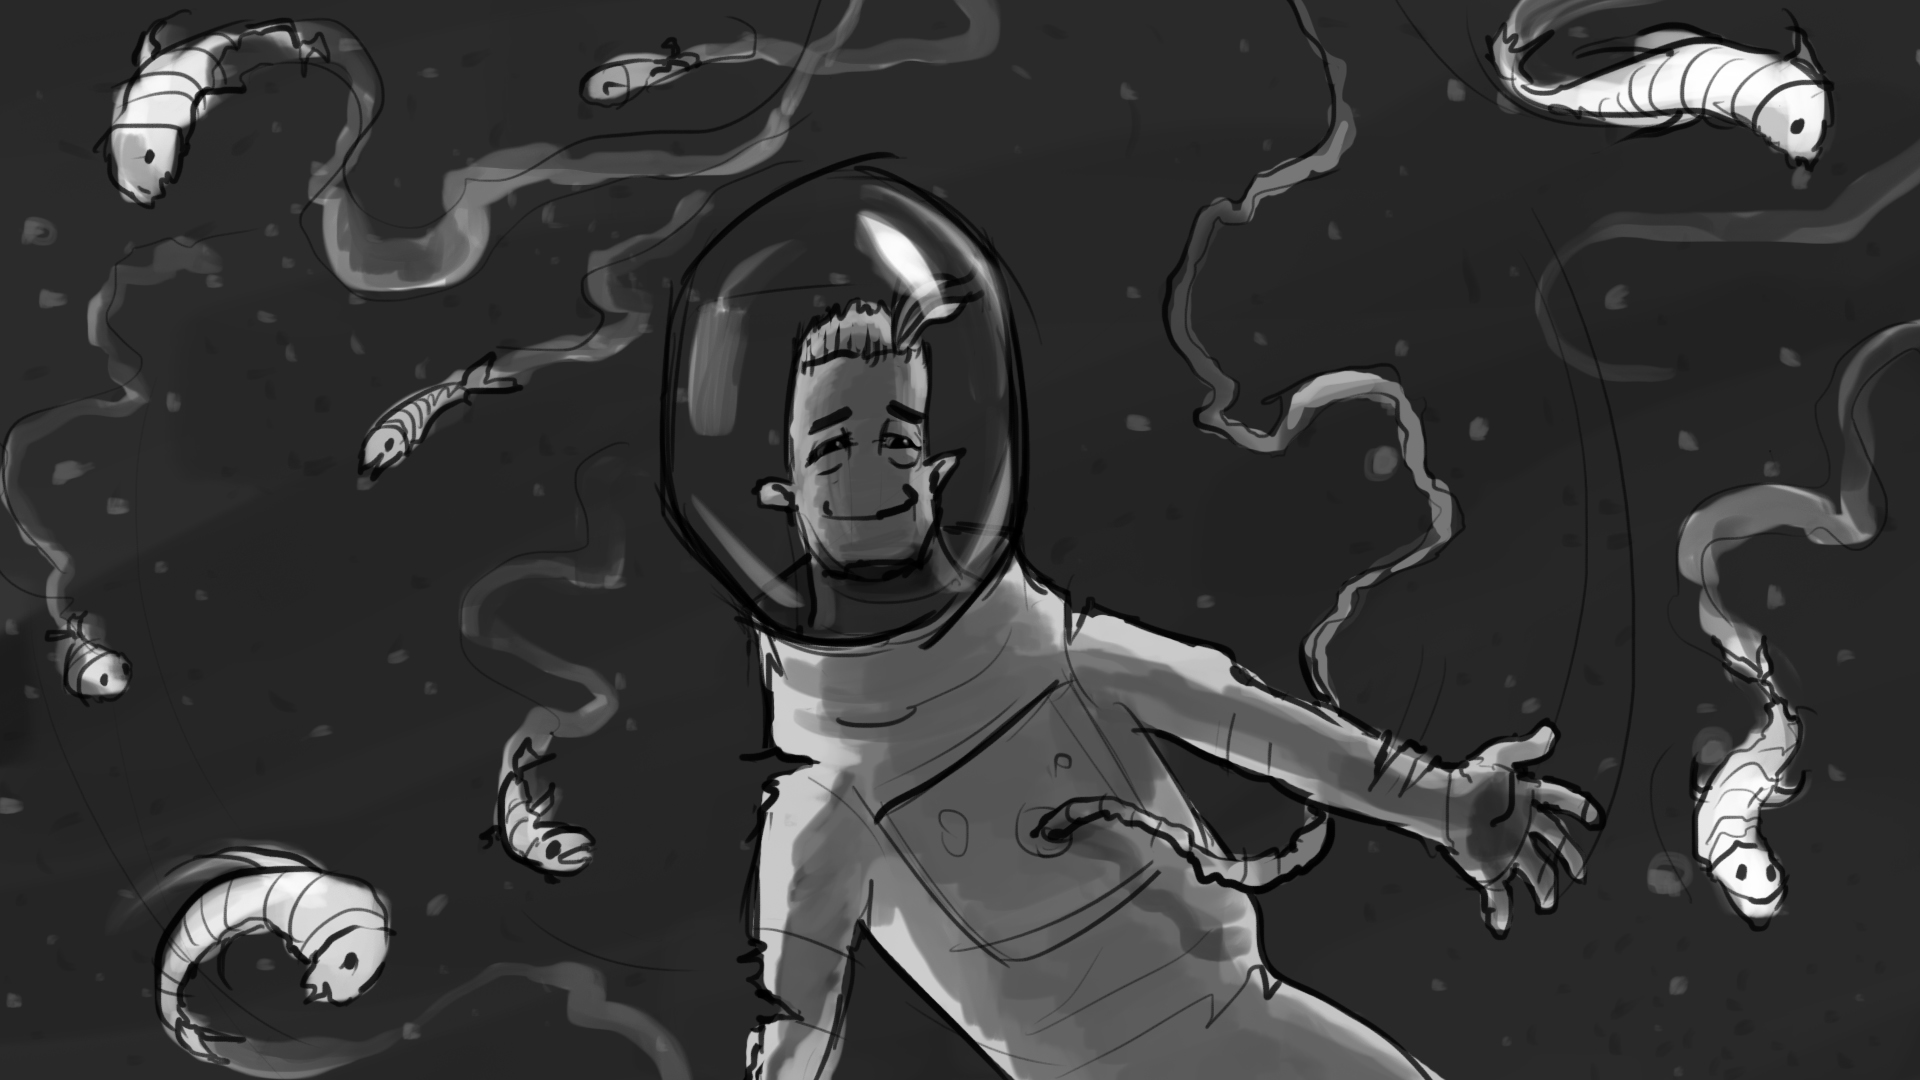 Rocket_Man_Storyboard_Artboard 19.jpg